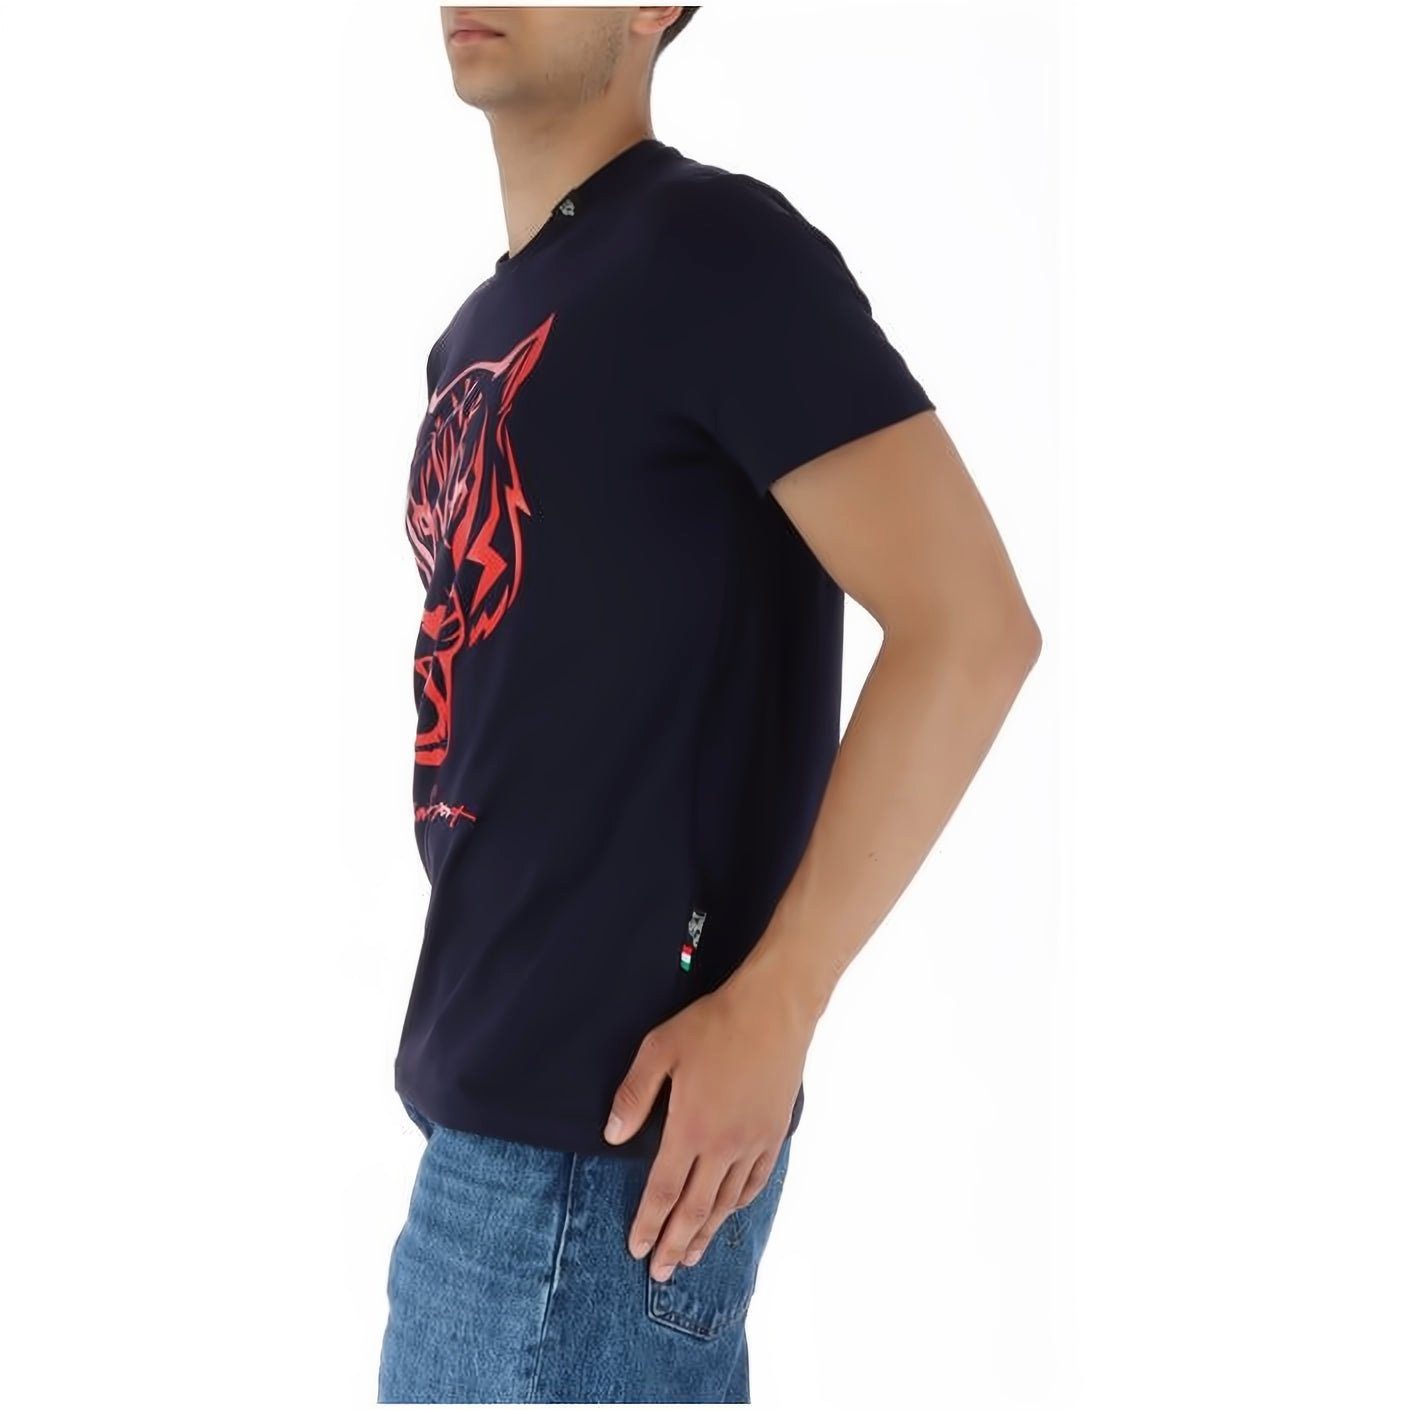 PLEIN SPORT Look, Stylischer Tragekomfort, vielfältige ROUND T-Shirt hoher NECK Farbauswahl